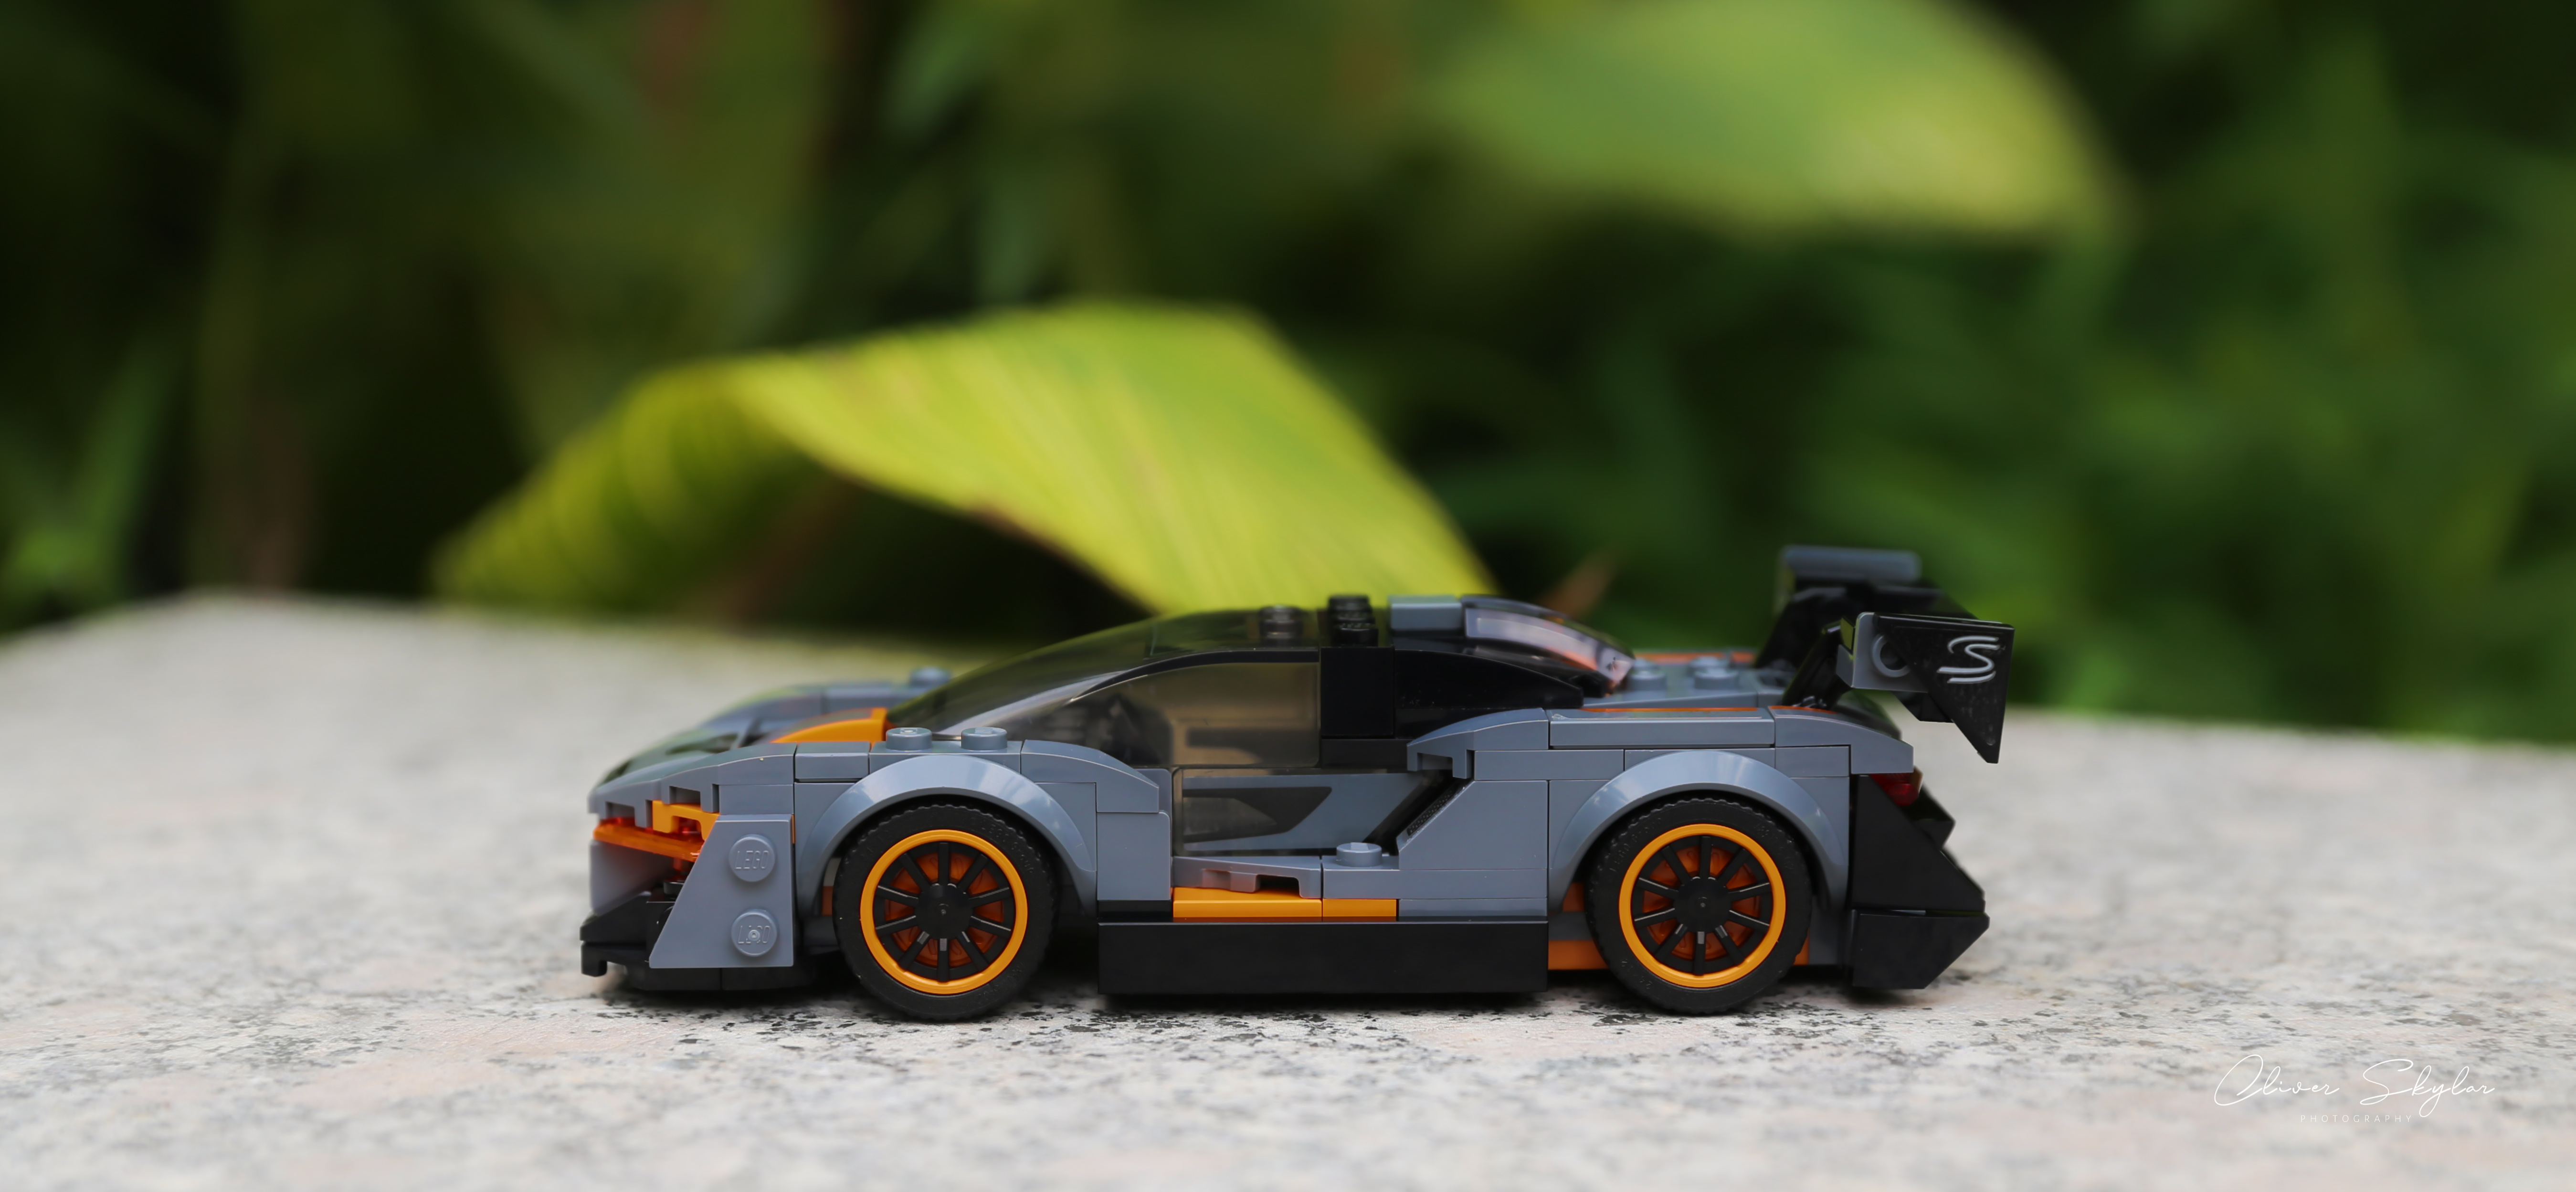 LEGO McLaren McLaren Senna Motors Motorsports Road Star Car Race Cars 5396x2497